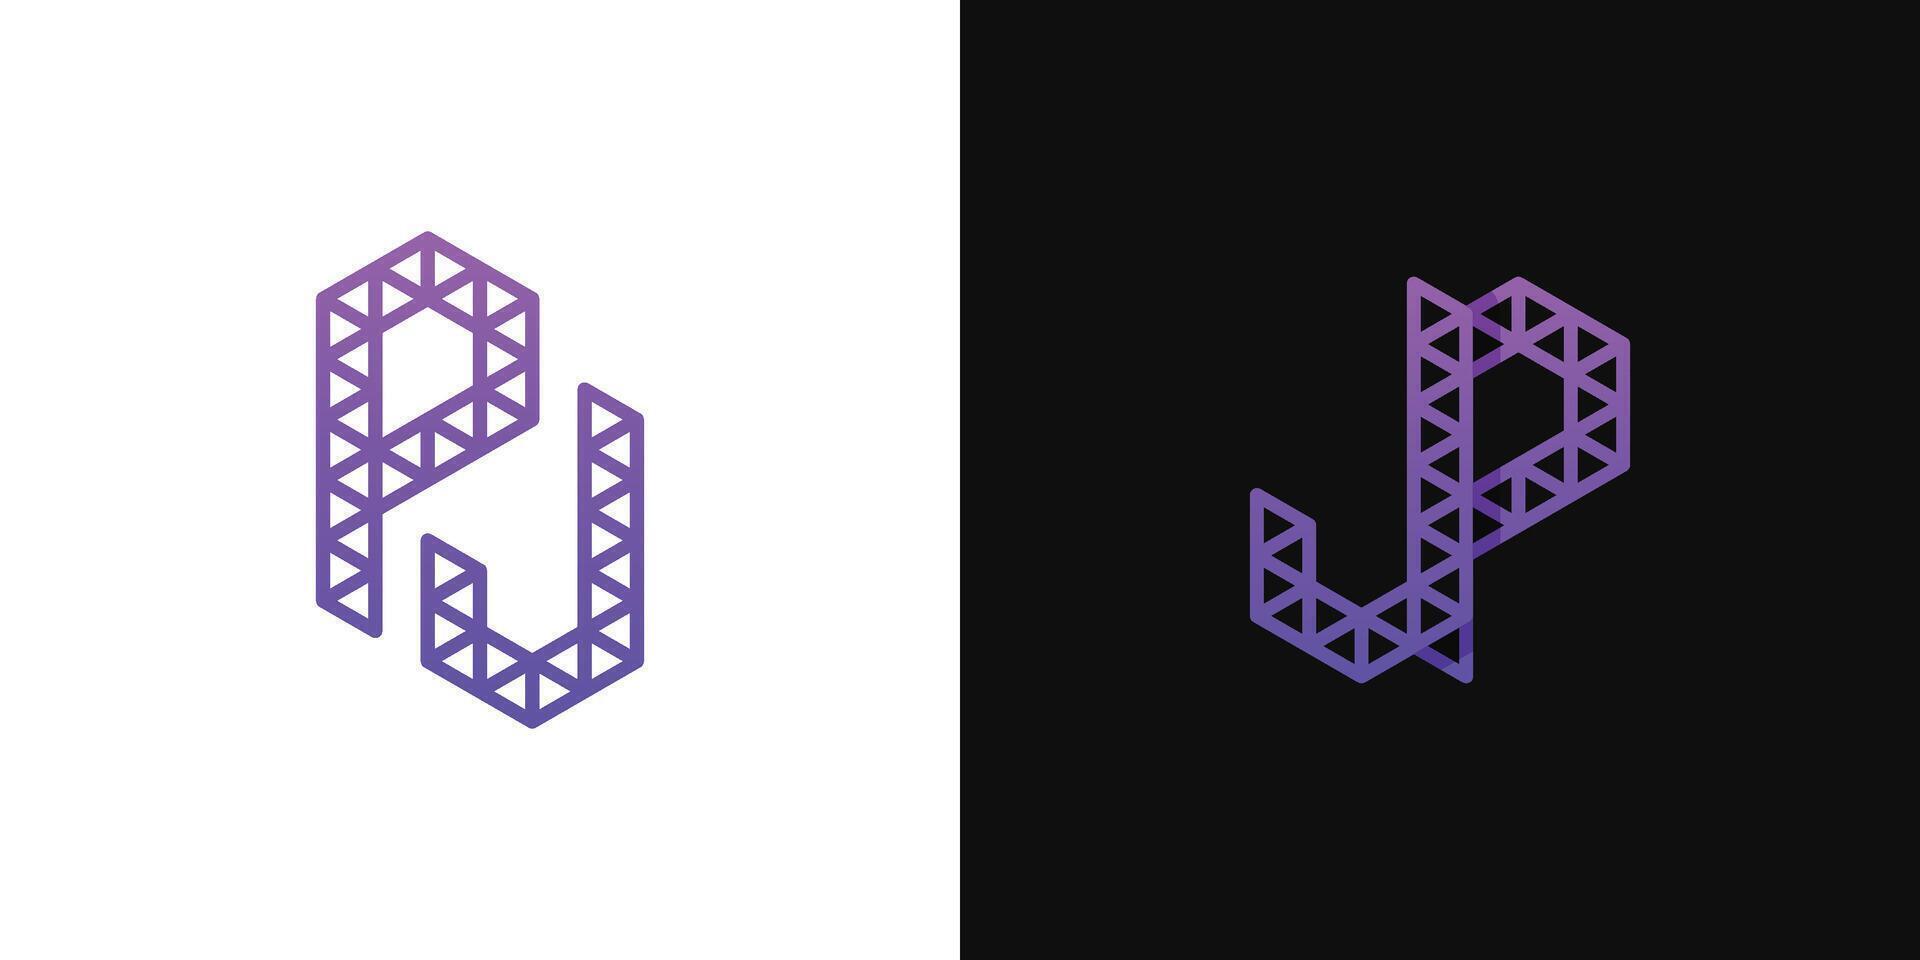 des lettres jp et p j polygone logo, adapté pour affaires en relation à polygone avec jp ou p j initiales vecteur